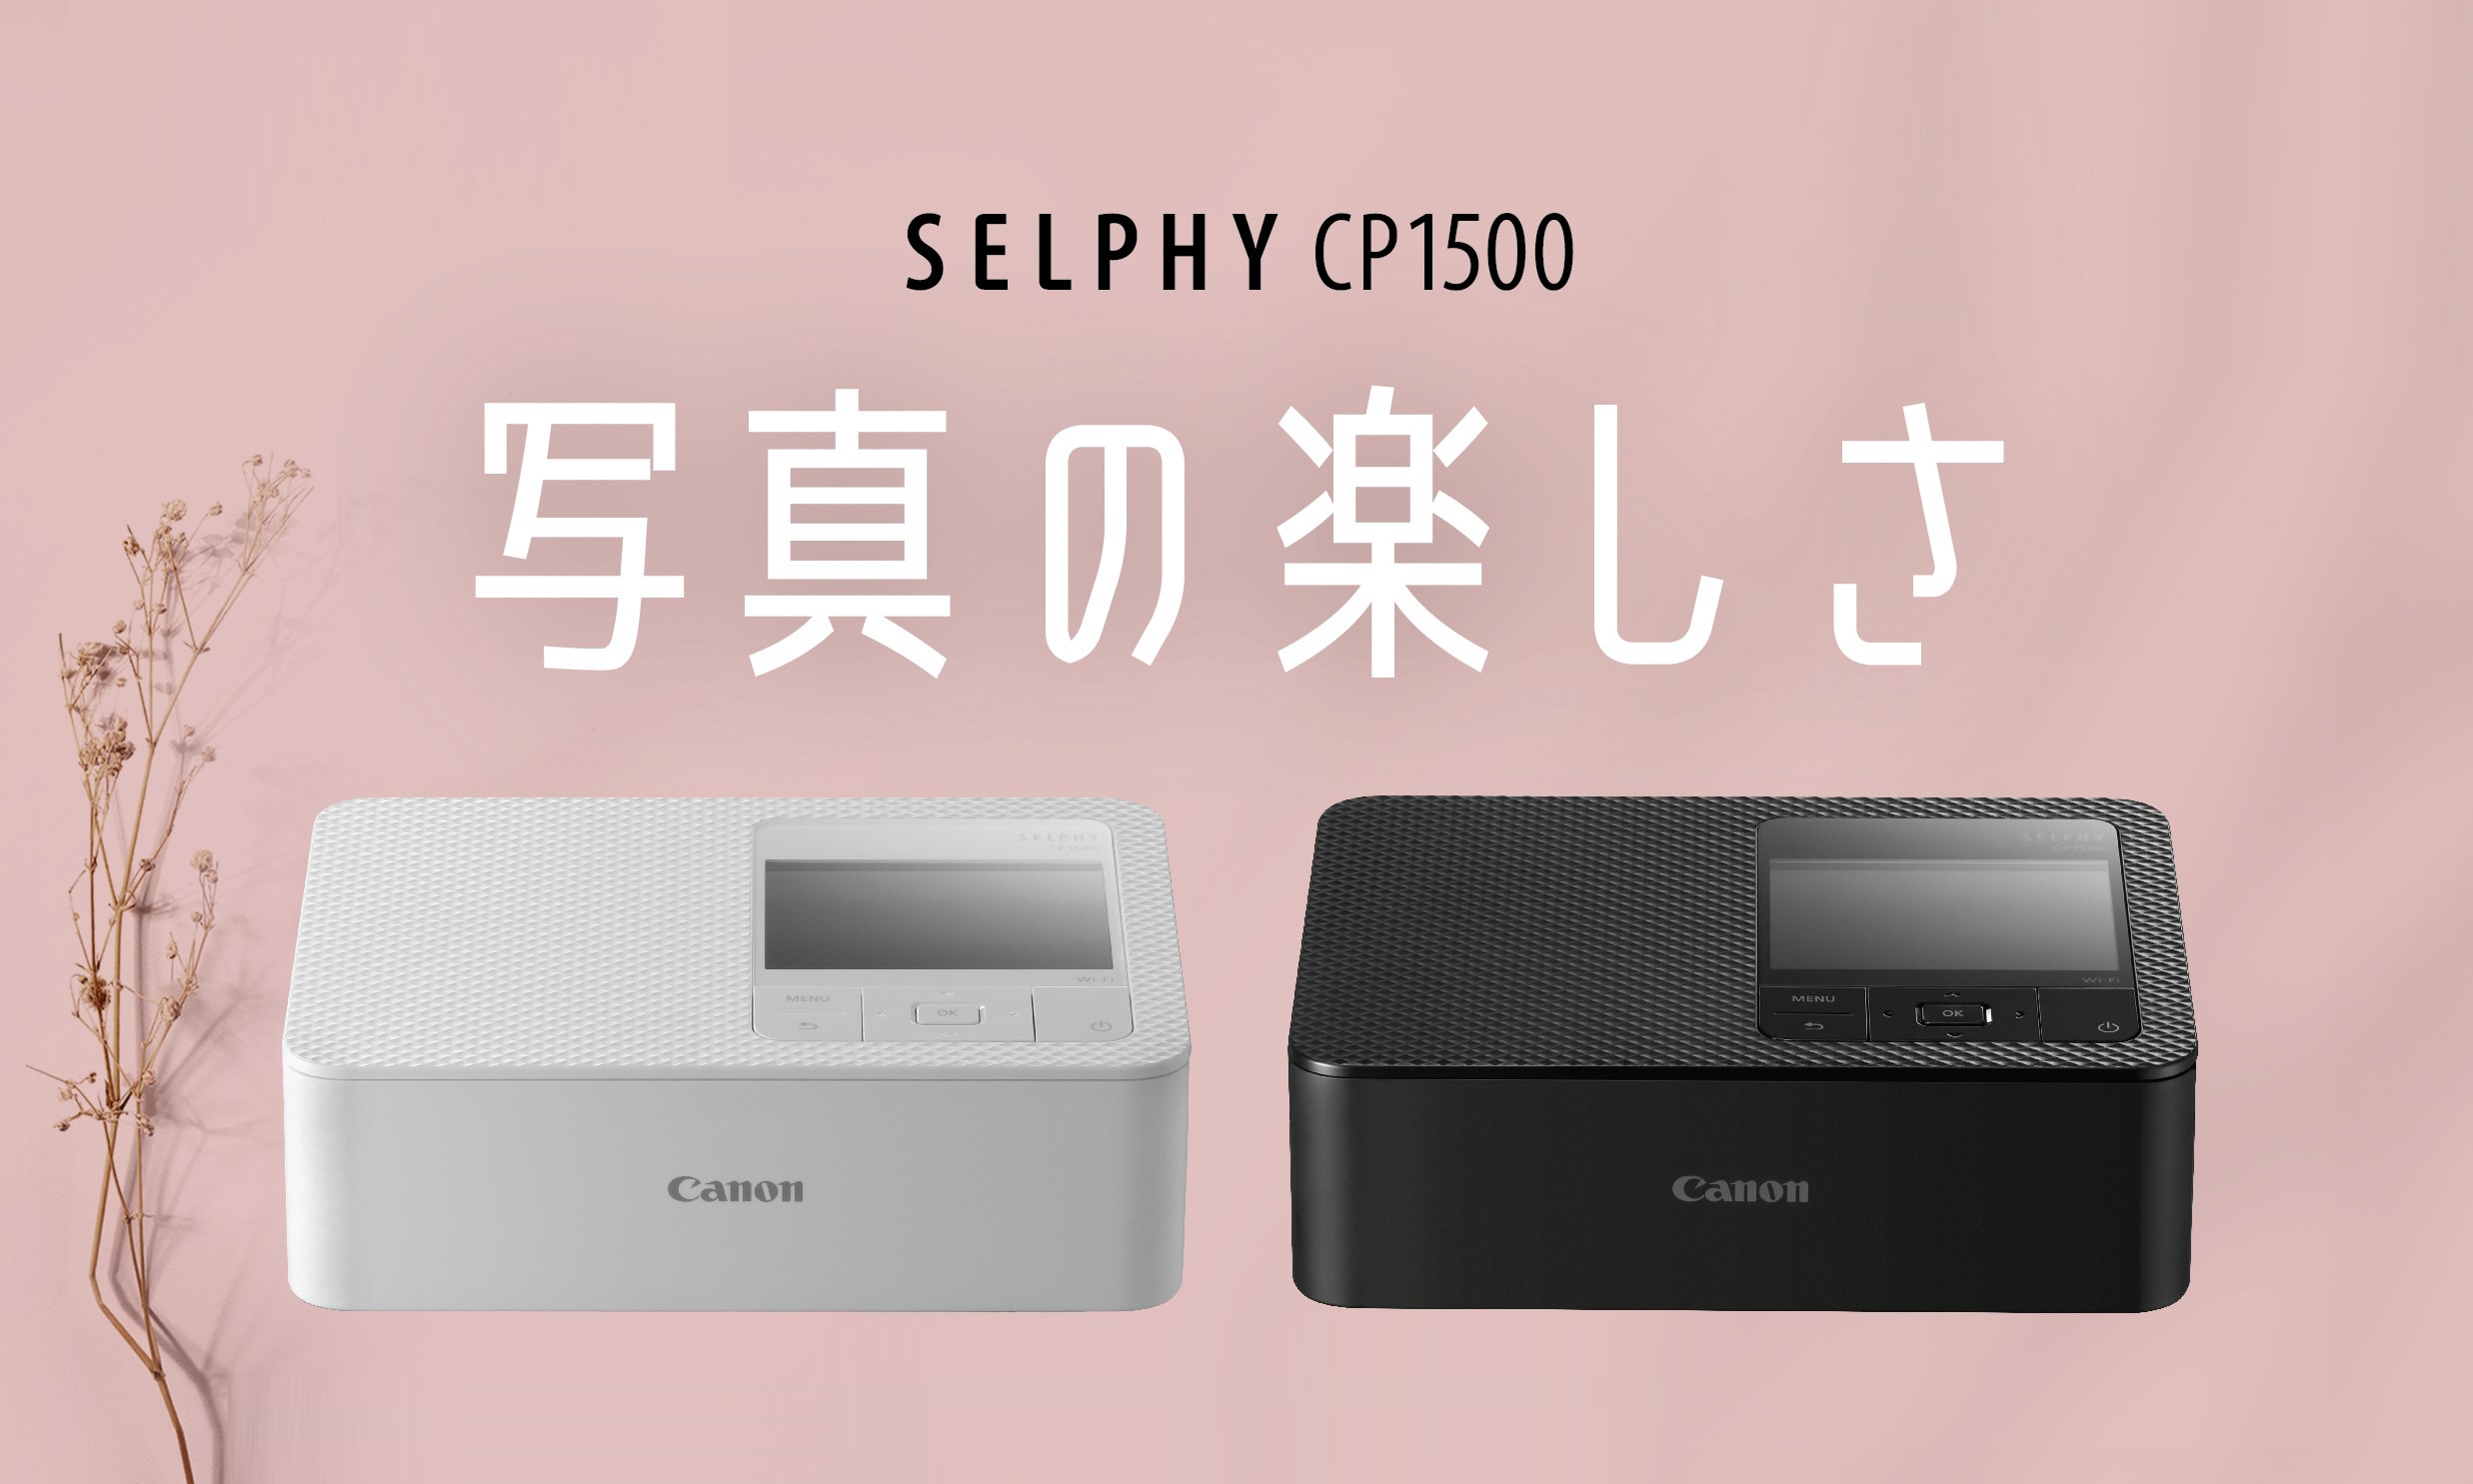 Canon SELPHY CP1500 Compact Printer - BLACK